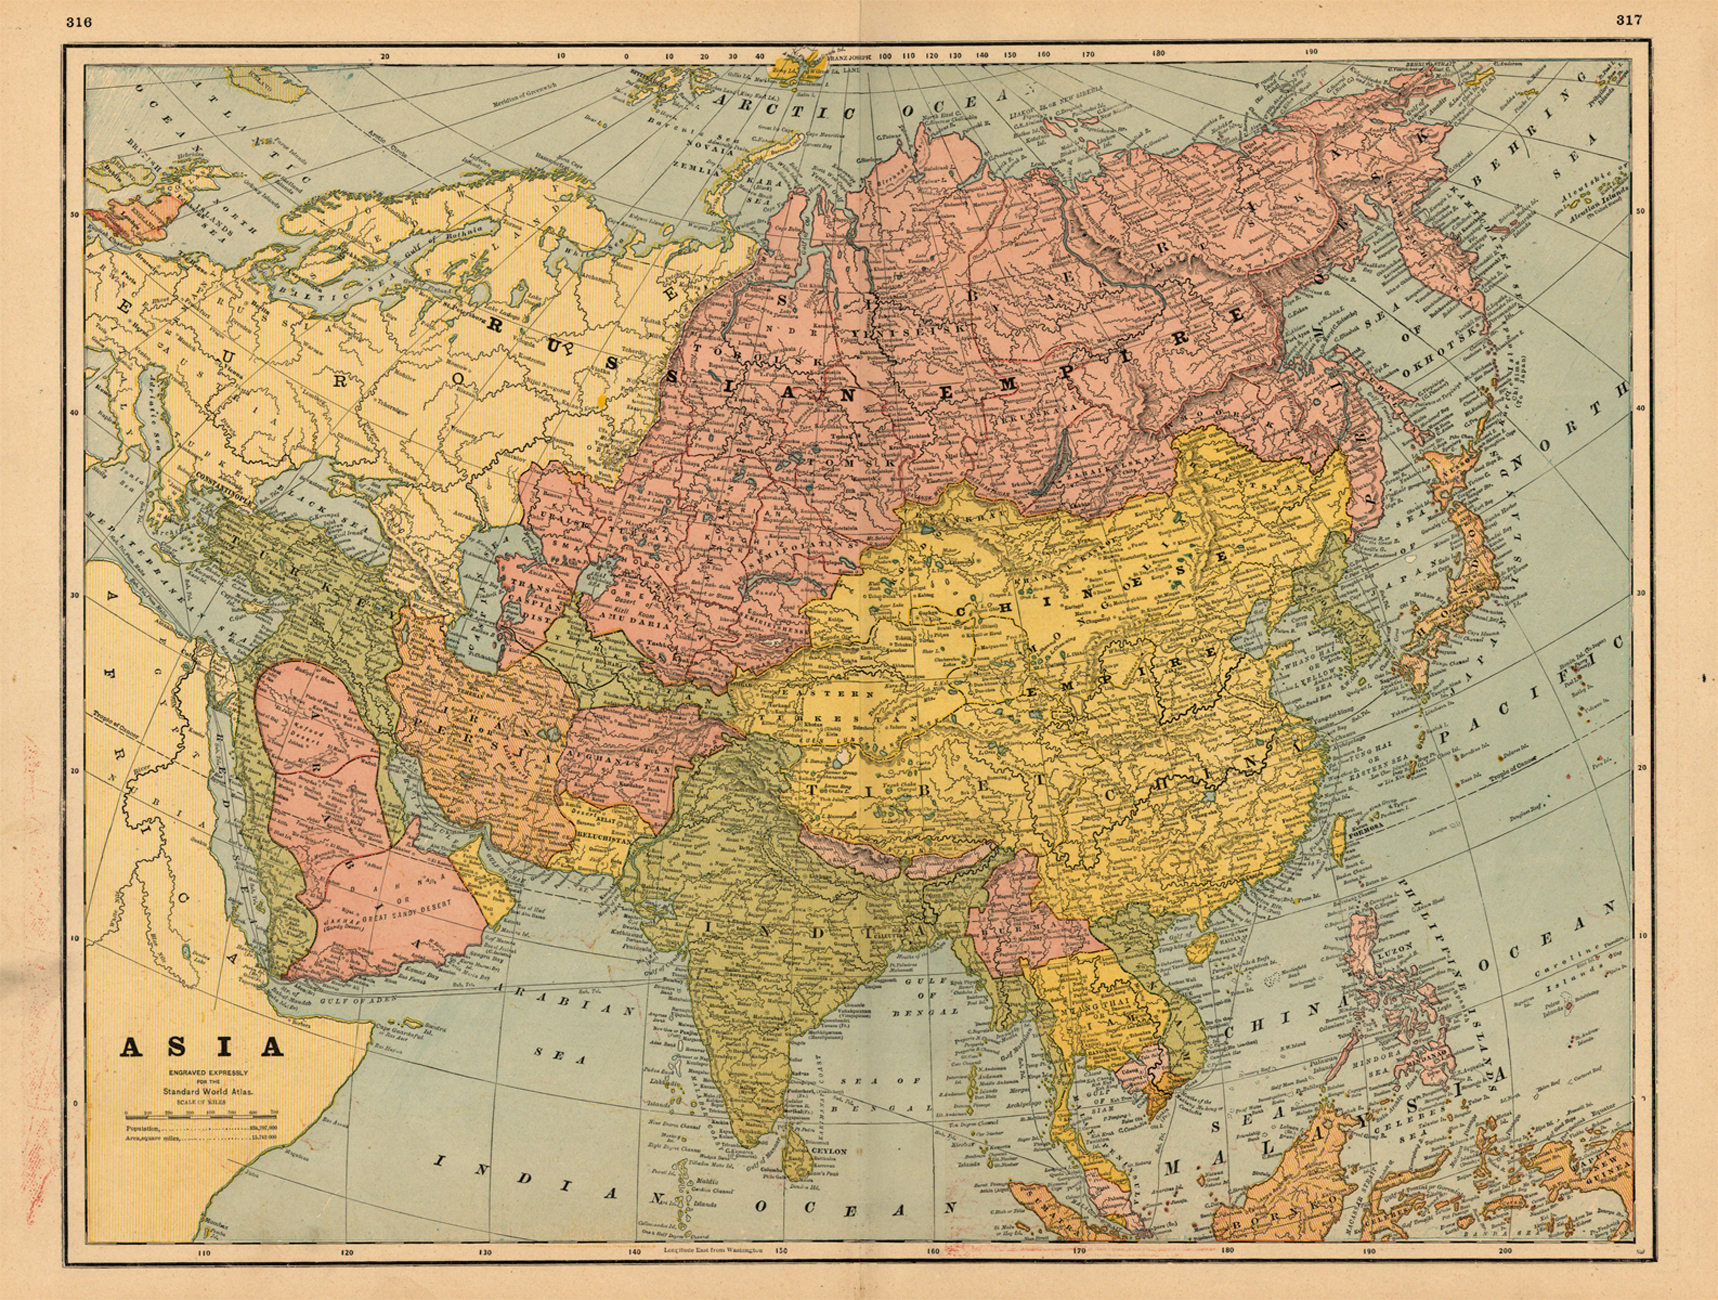 Мир в 1800. Карта Азии 1800 года. Политическая карта 1800 года.